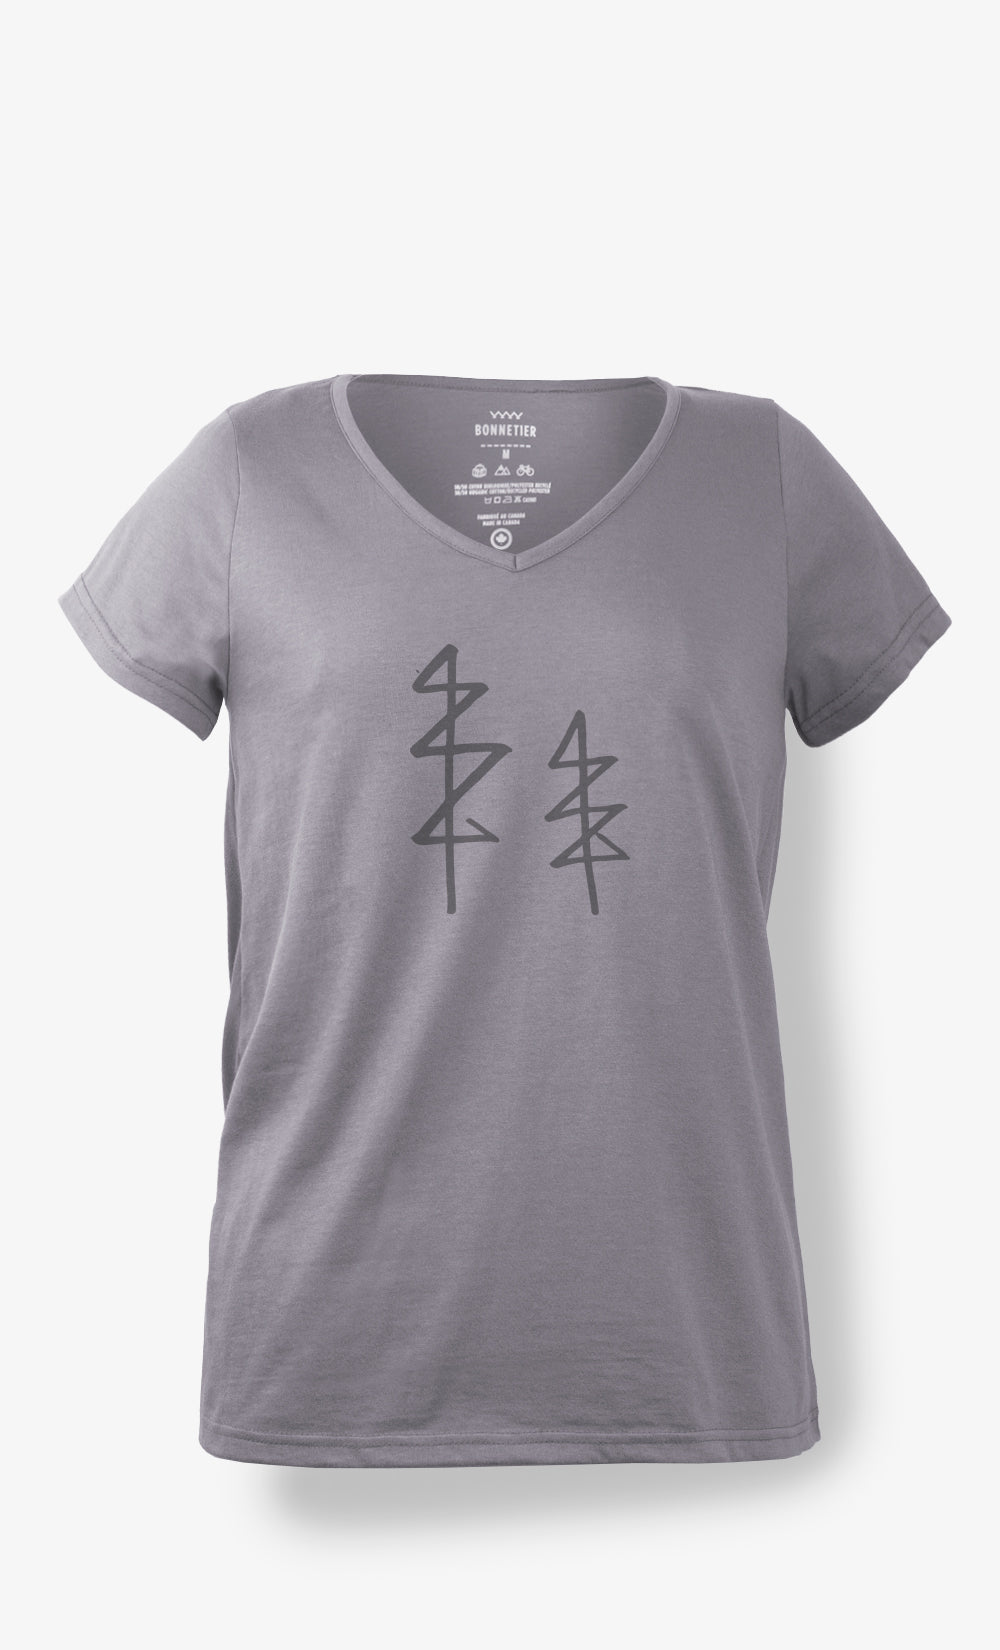 T-shirt Femme Taupe - Arbre Trait